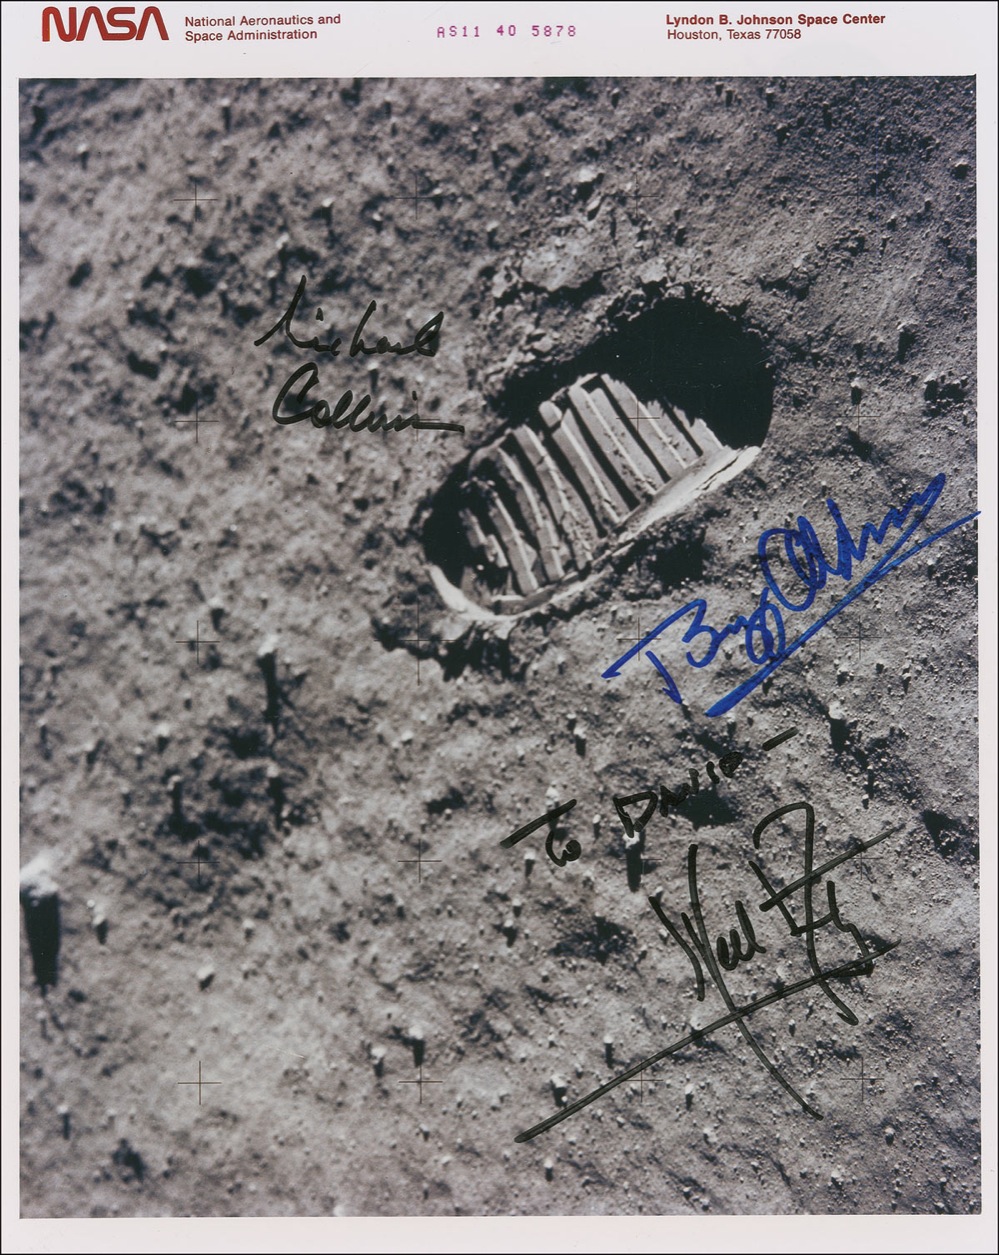 Lot #240 Apollo 11